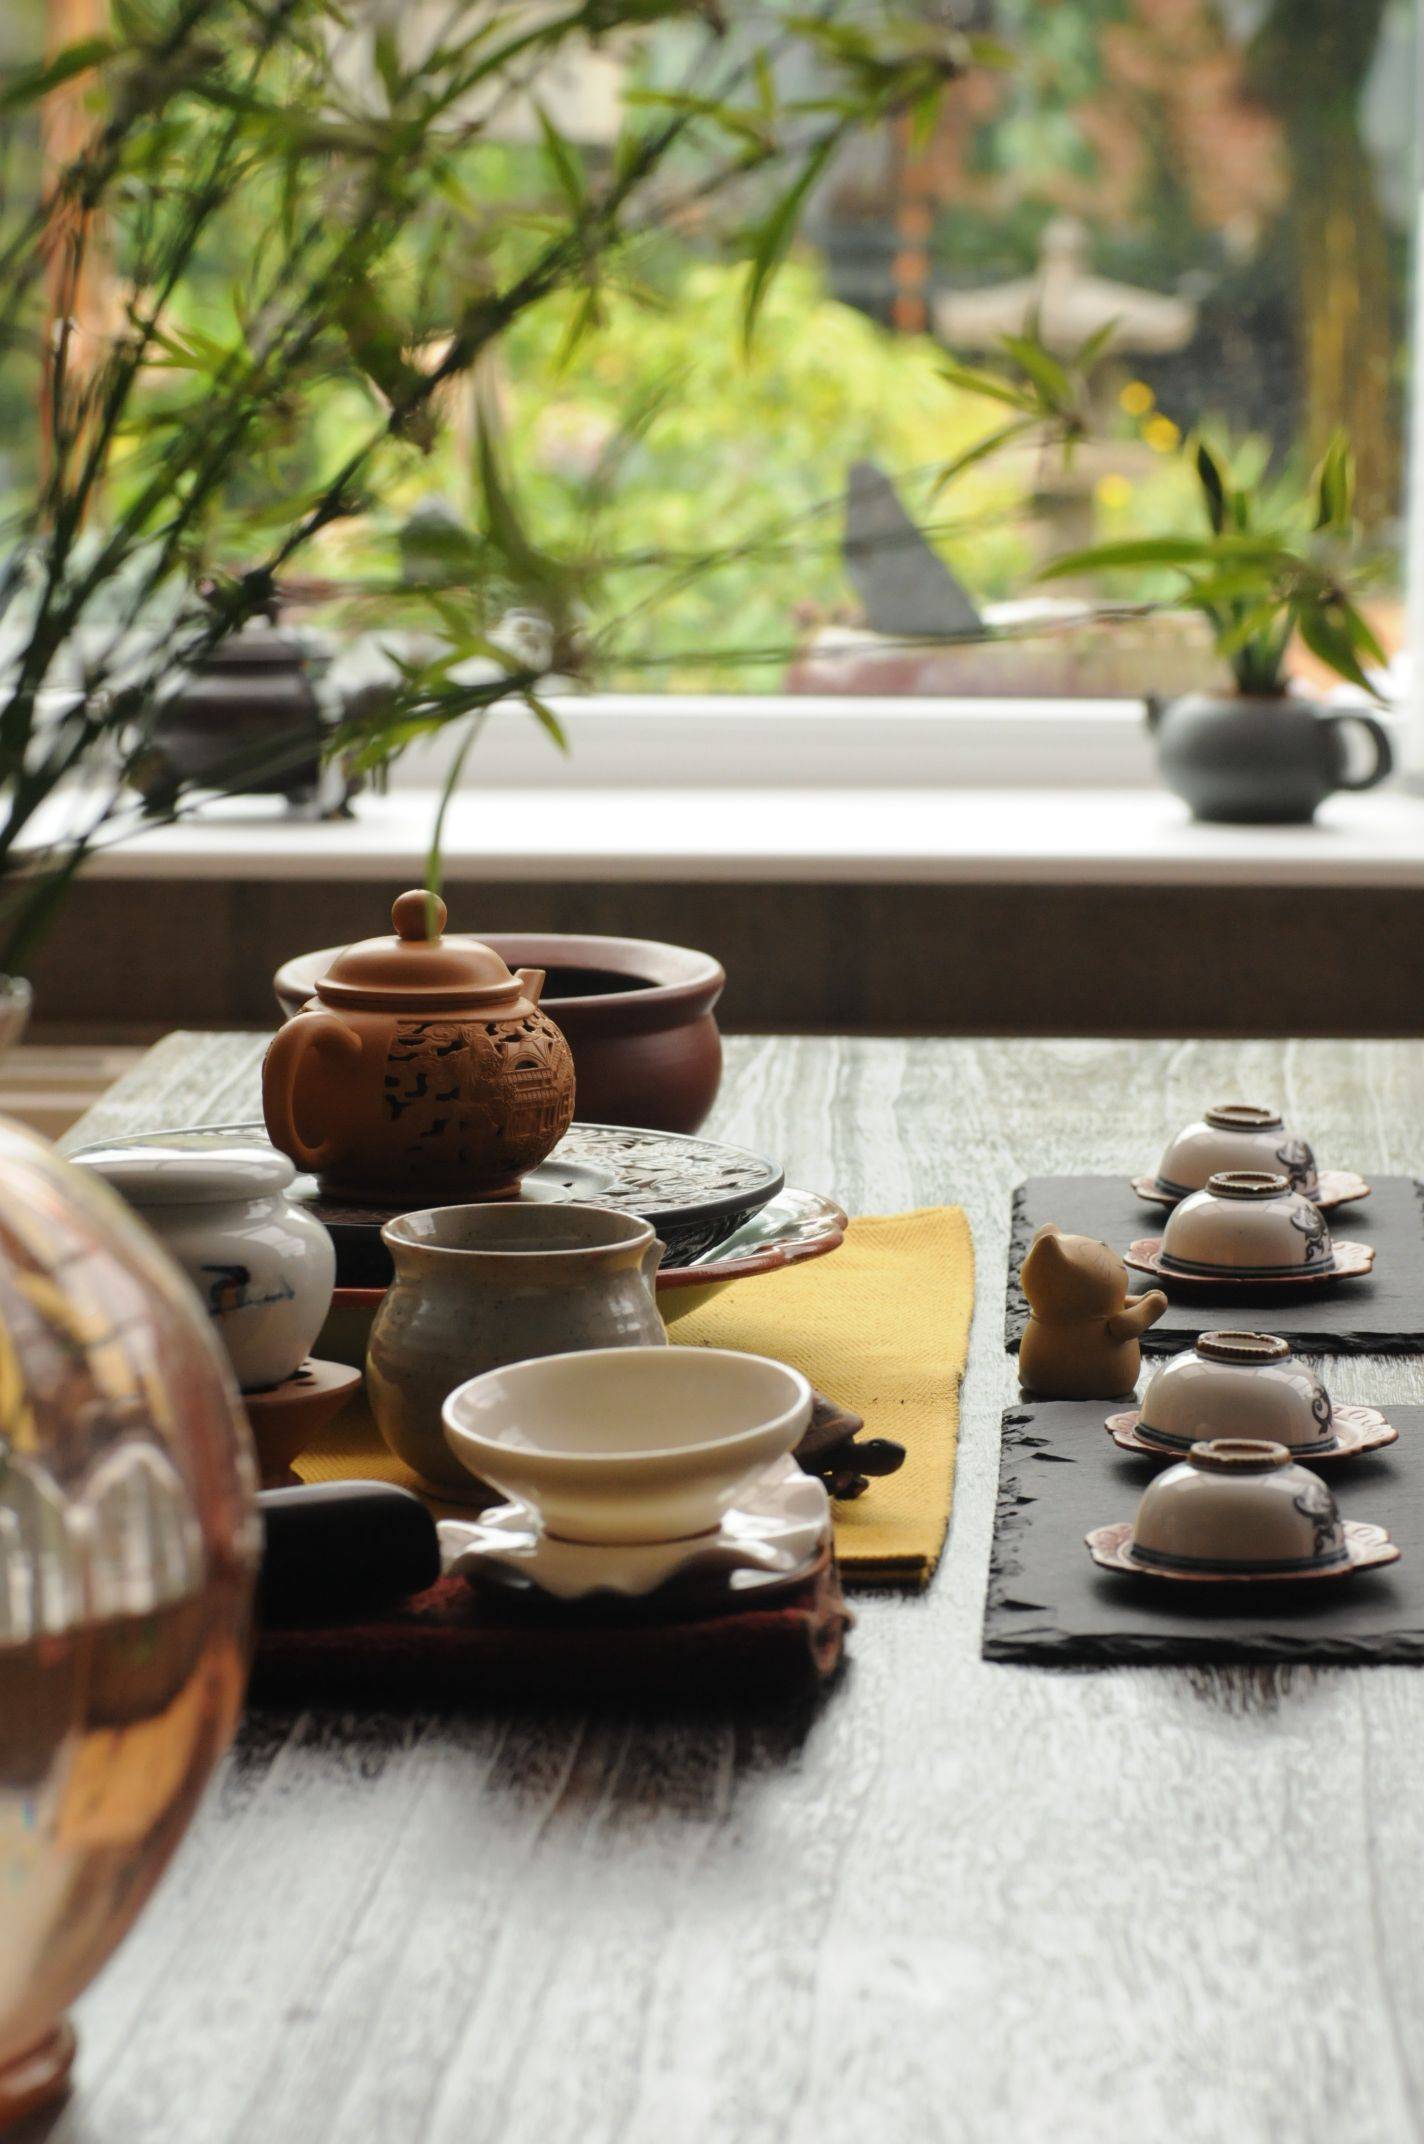 японский чай фото